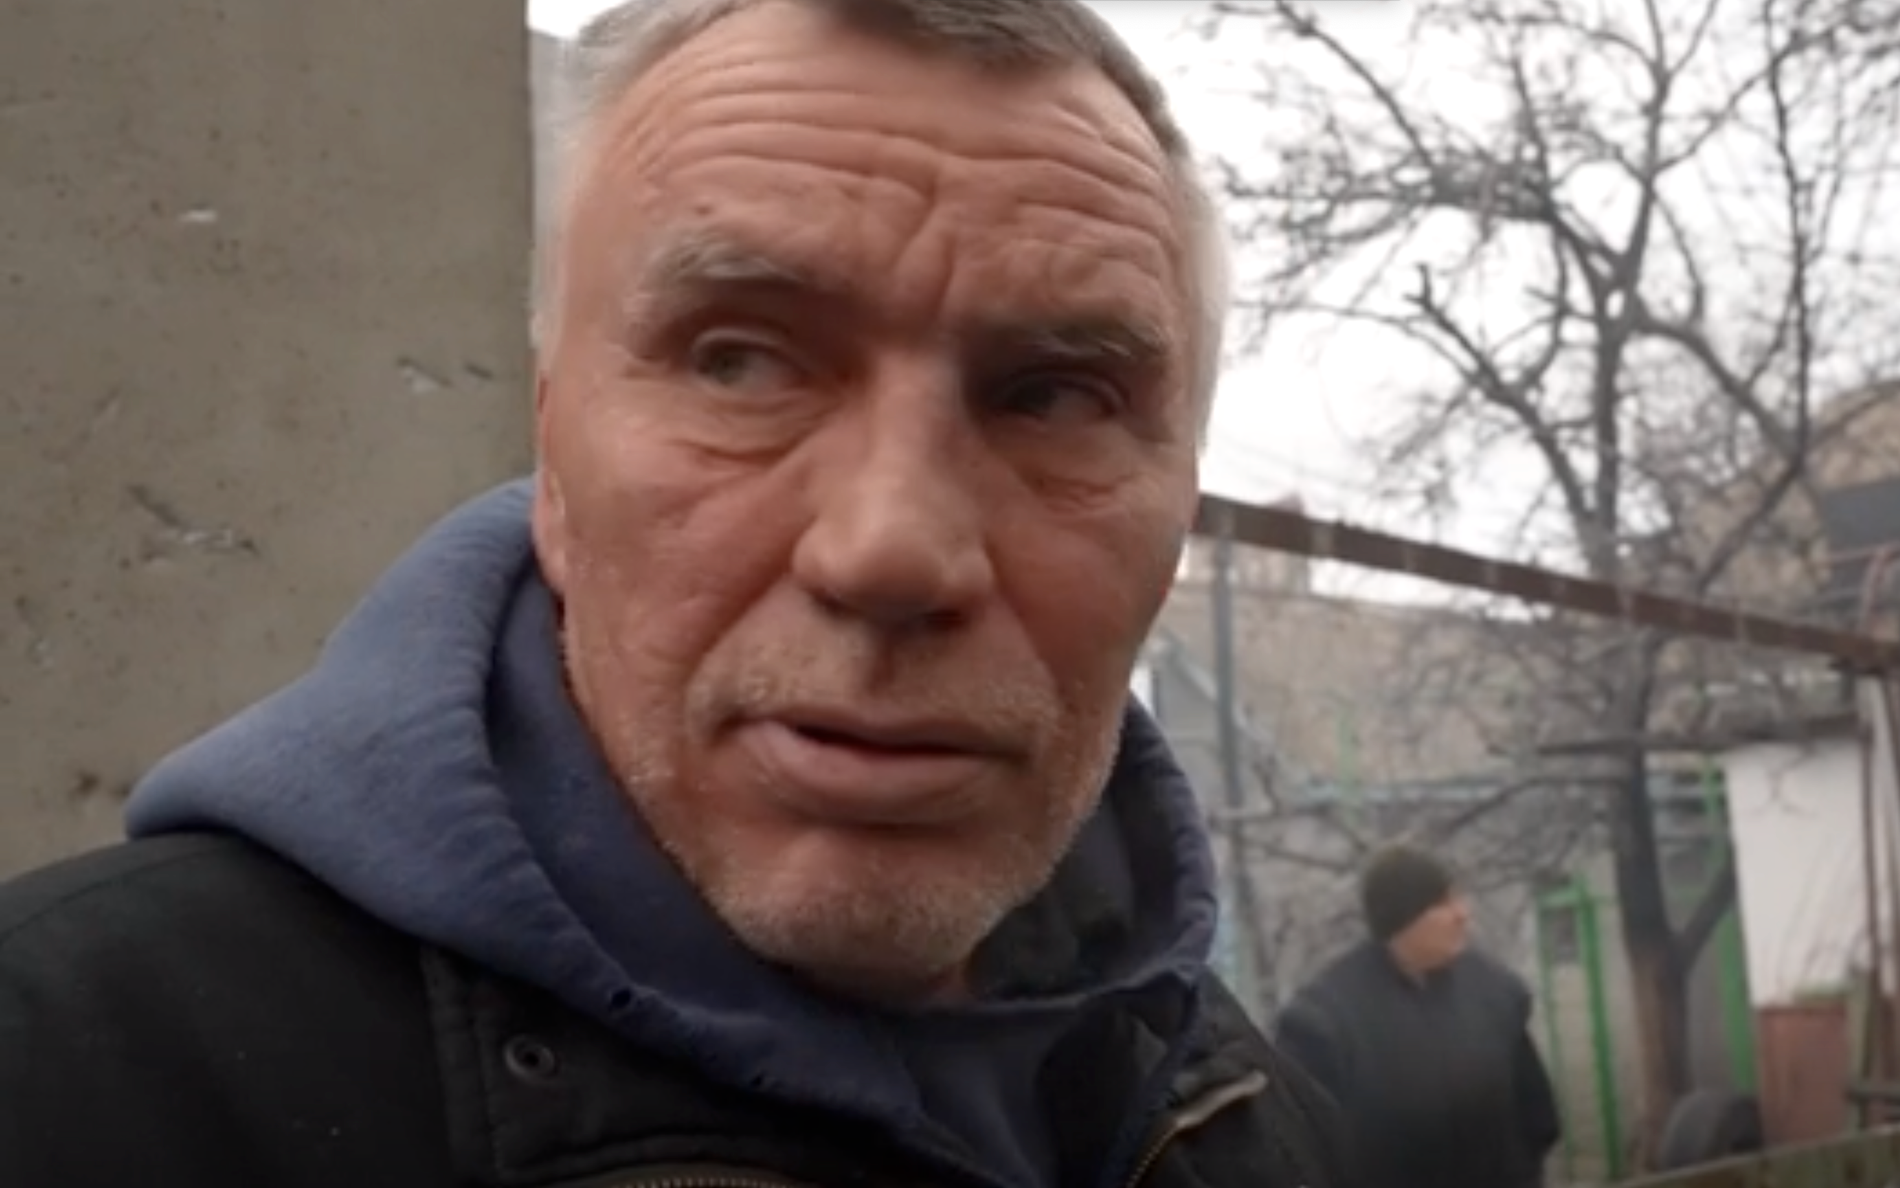 Vitaliys hem stod i lågor på torsdagen, efter de ryska attackerna. ”Jag vill bo i Ukraina i lugn och ro”, säger han